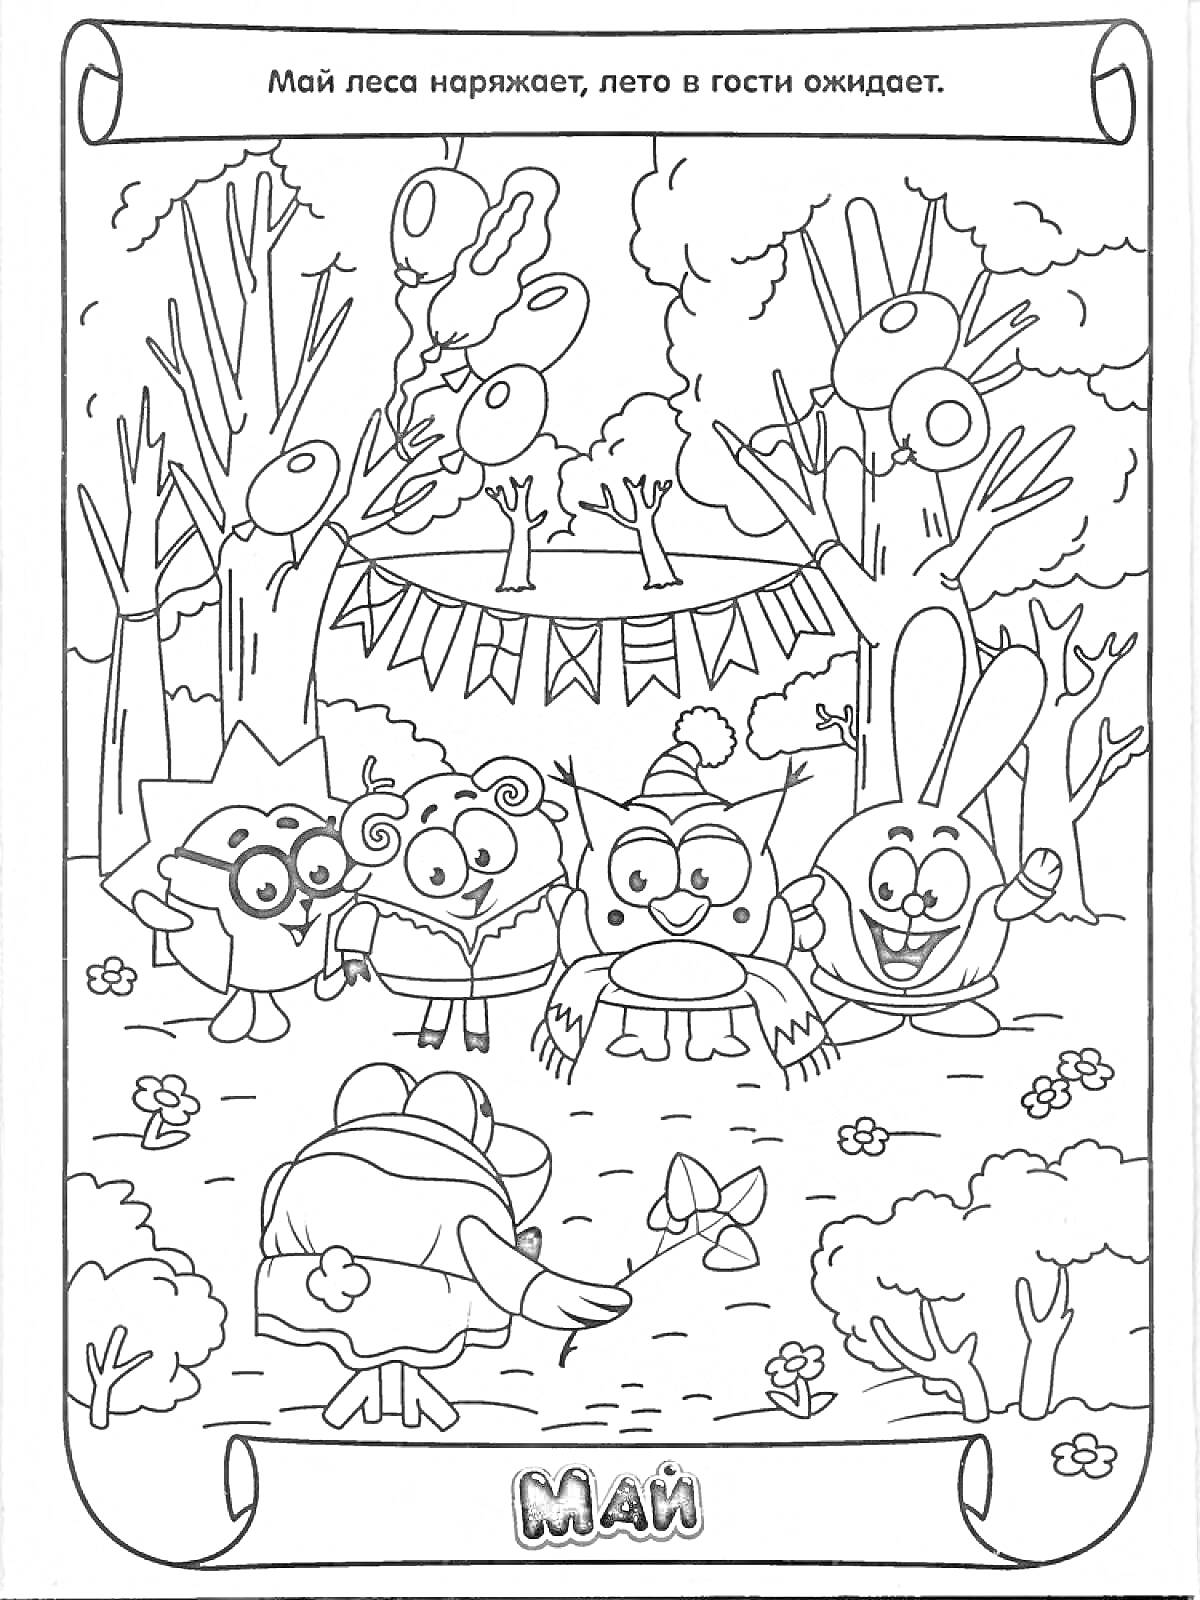 Май в лесу с пятью персонажами, цветы, деревья, гирлянды и воздушные шары, центральный персонаж с бабочкой и подарком